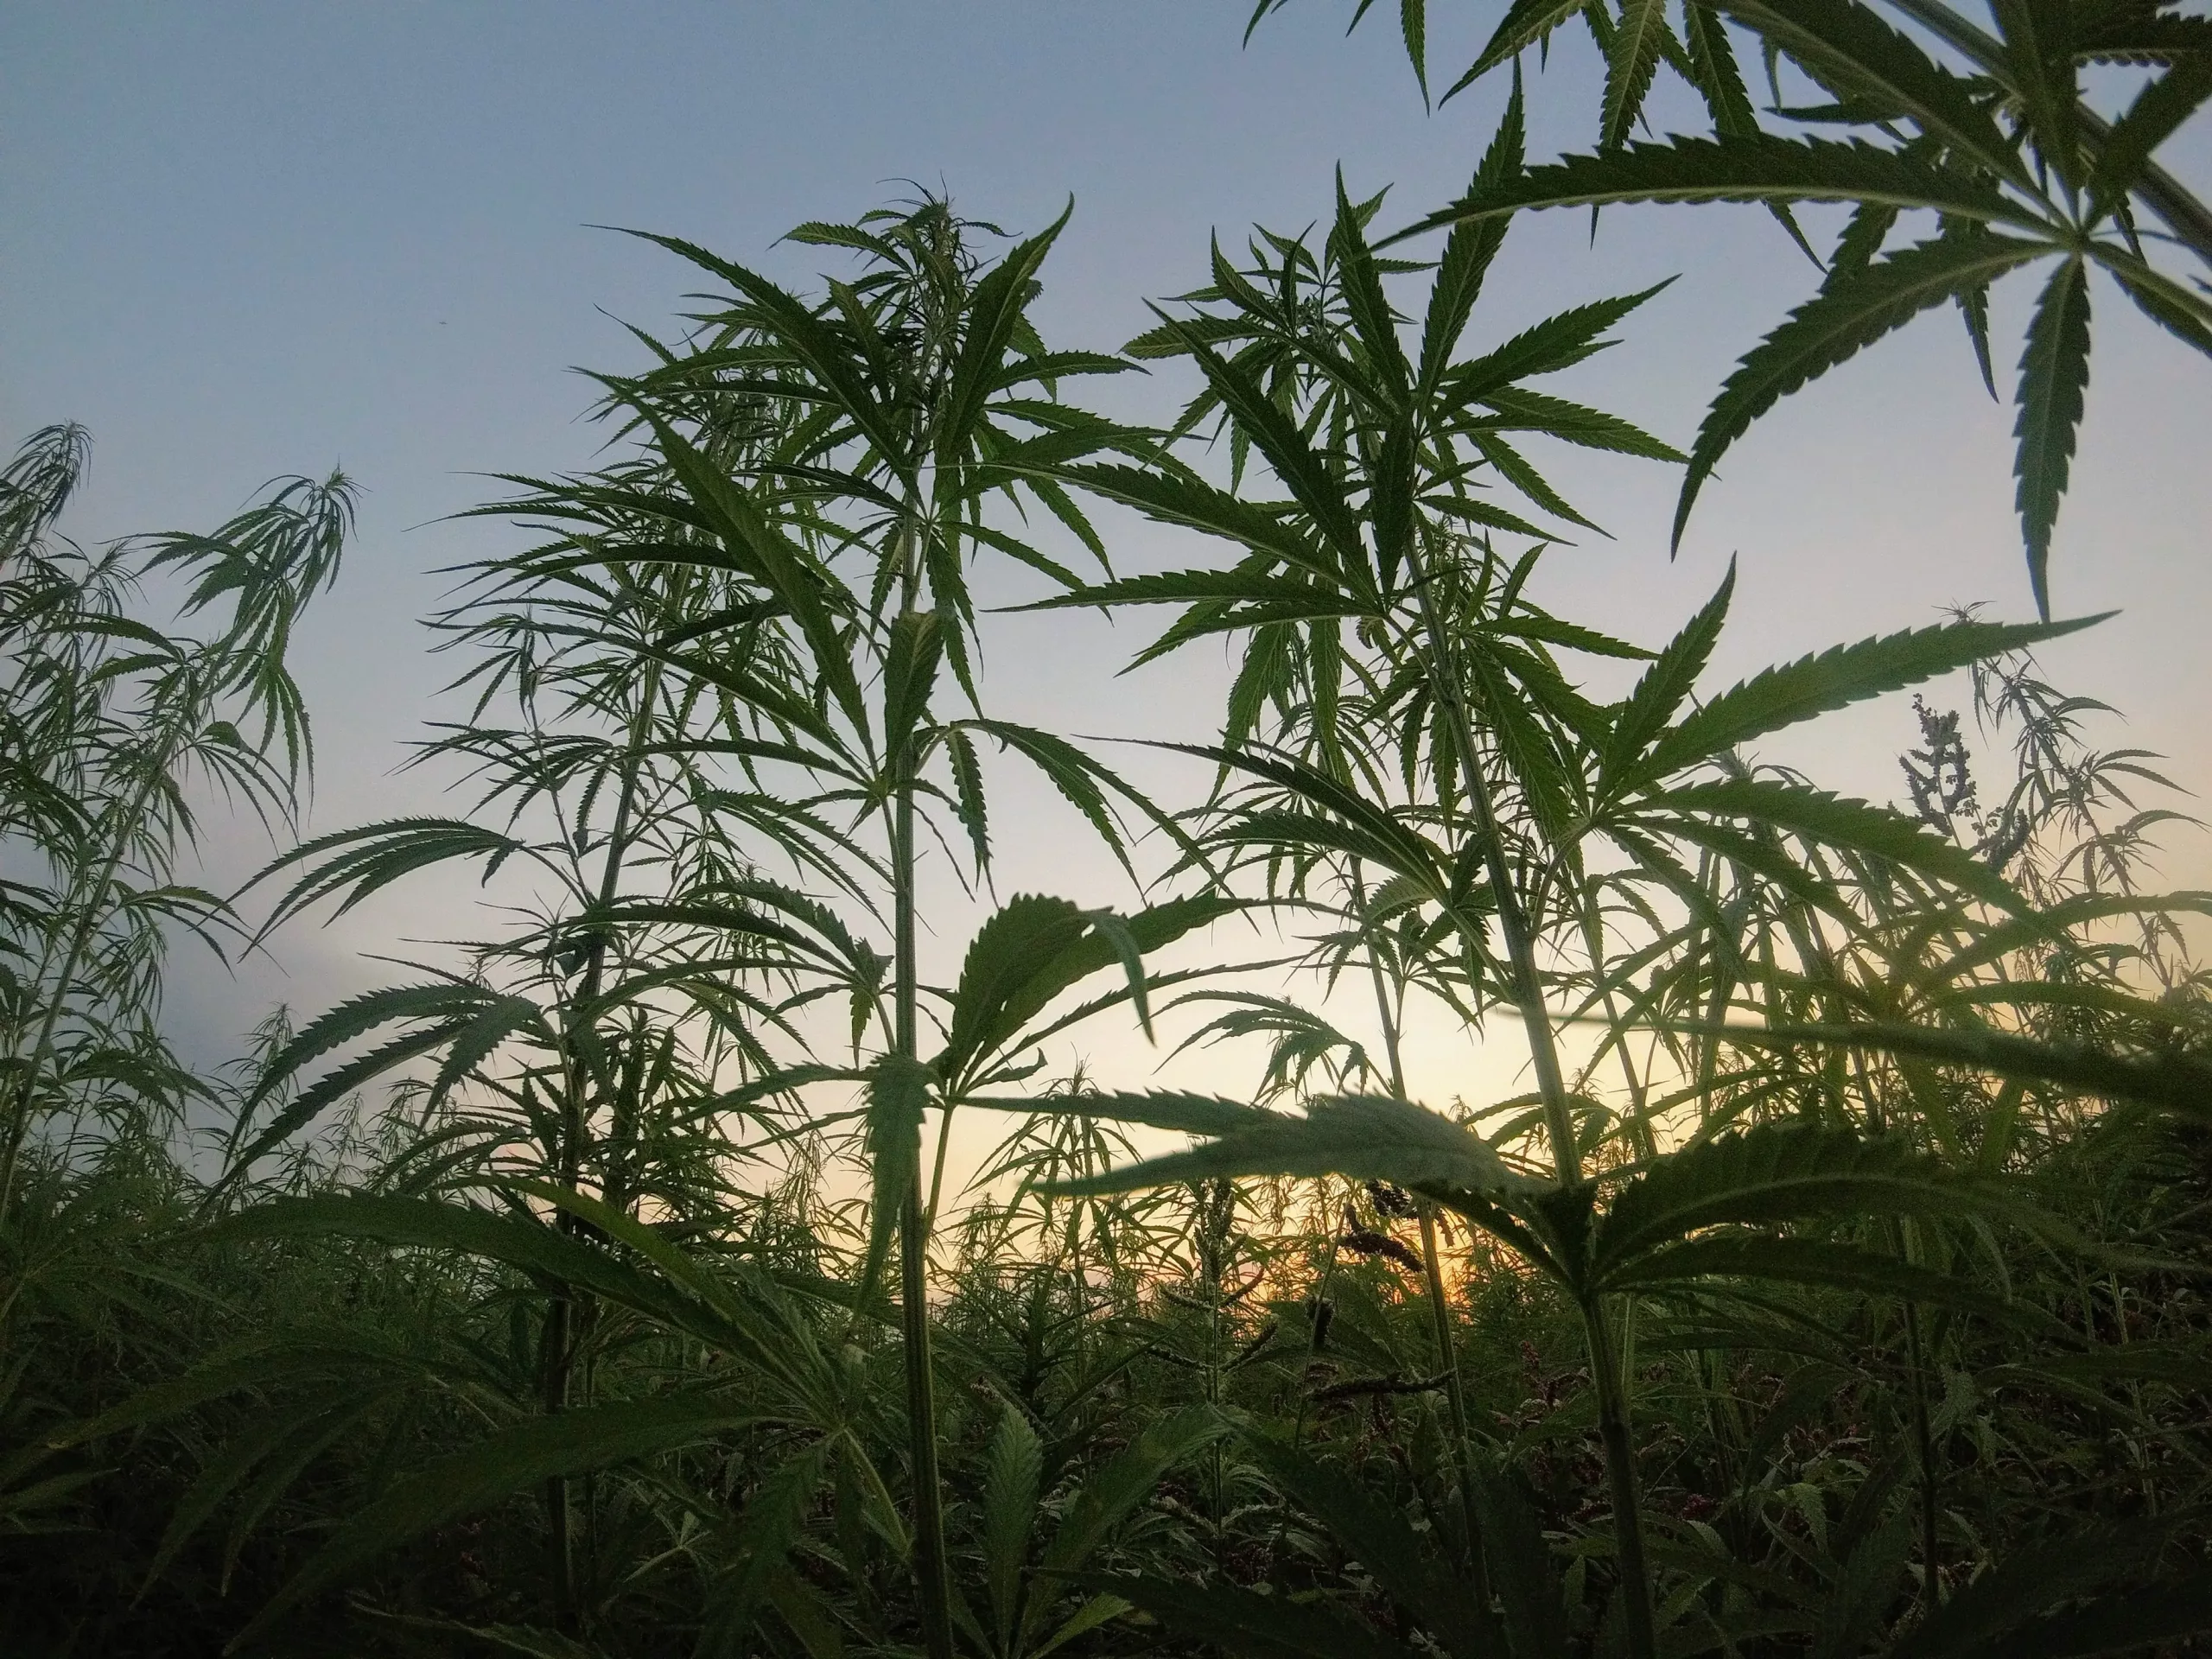 Cannabis bushes and cannabis leaves